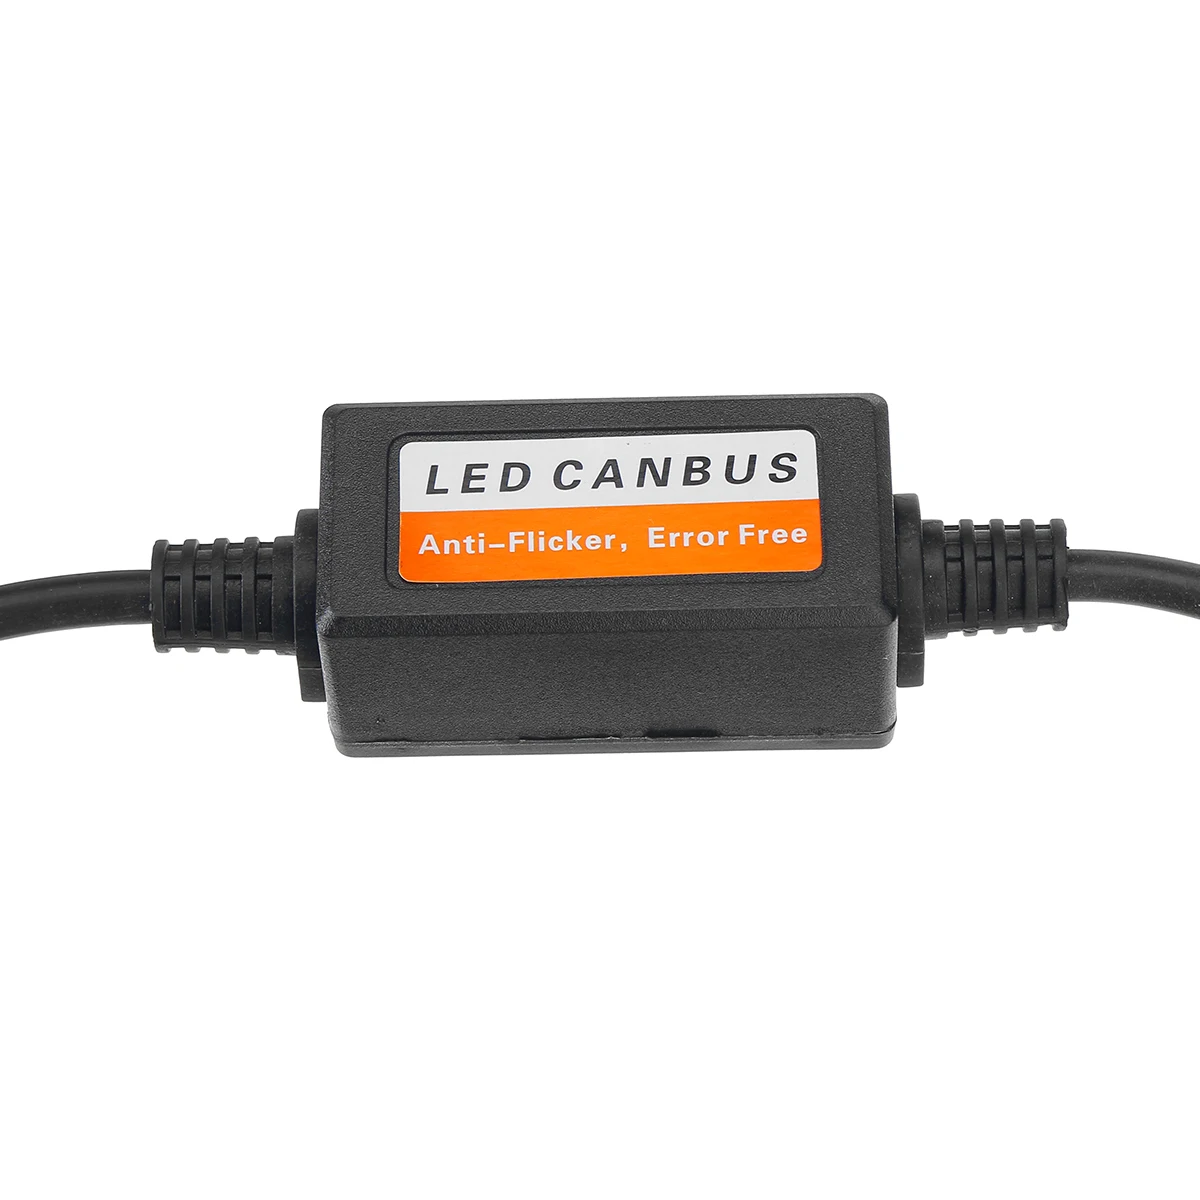 2pcs LED Canbus Decodificador Libre de Errores para Coche LED Bombilla del Faro Kits para bombillas H8 H9 H11 Adaptador de Anti-Parpadeo 9V-36V Universal 4